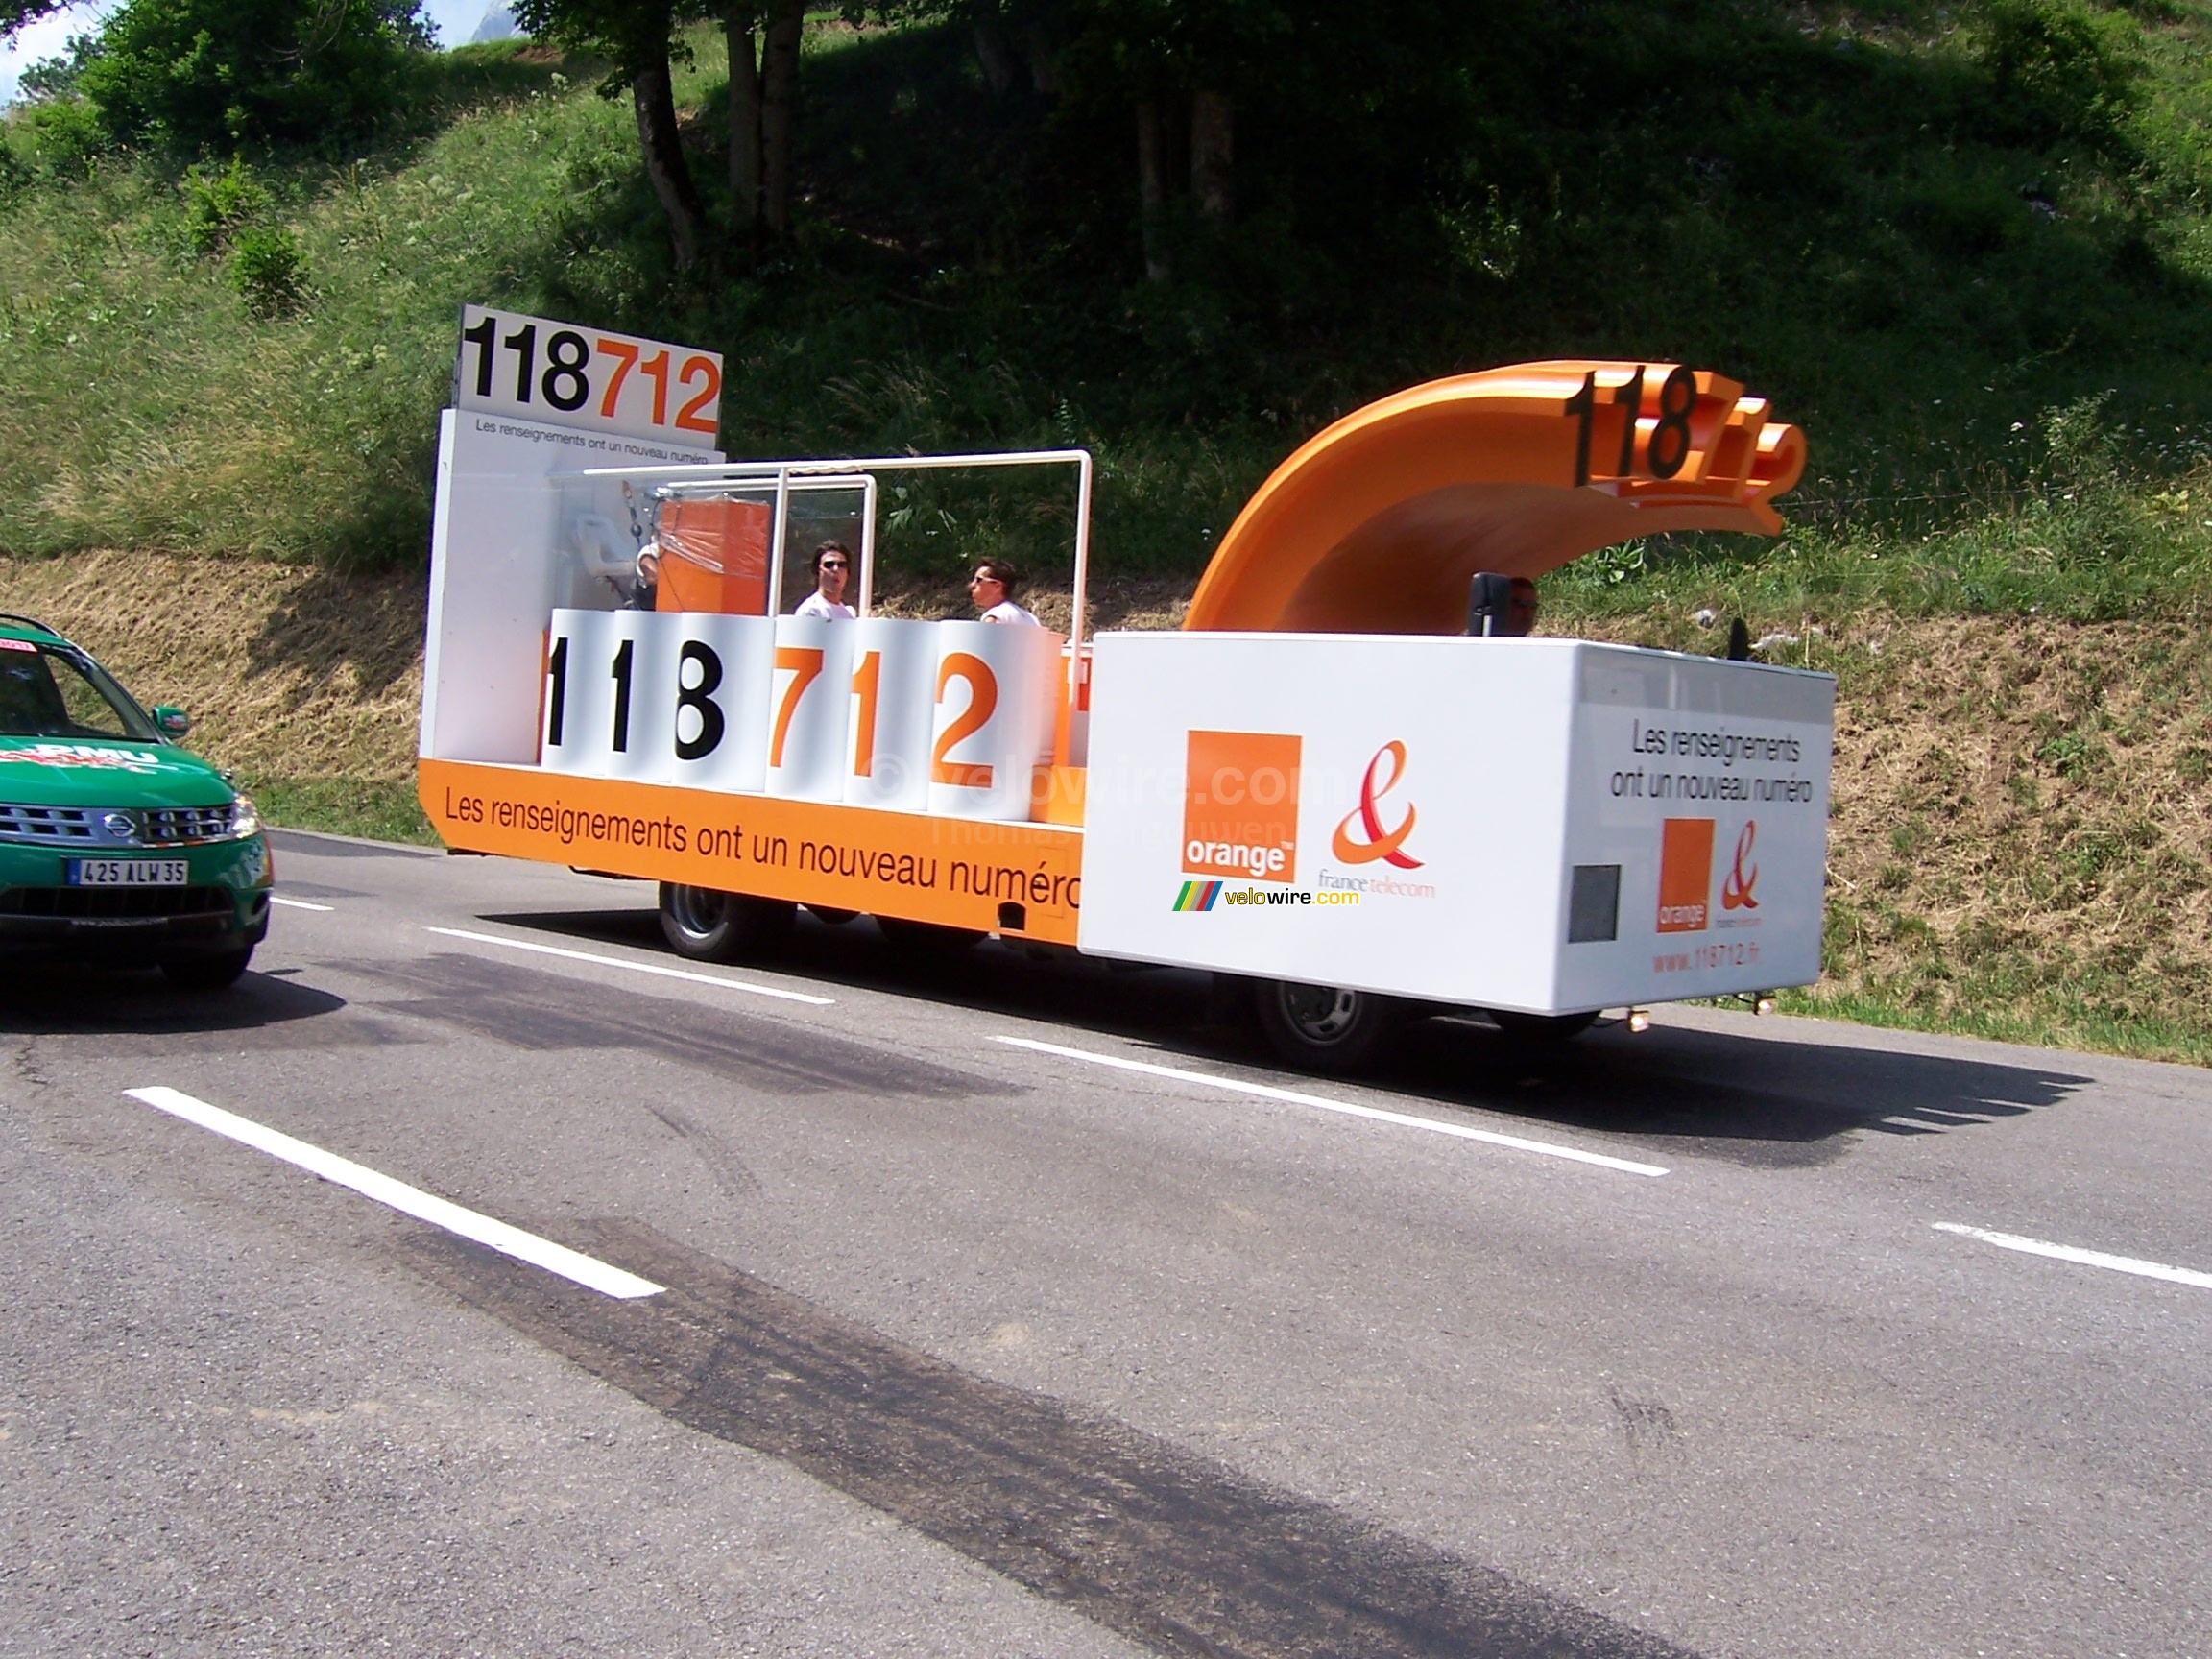 The 118 712 truck of France Telecom / Orange - [1 day in the La Vache Qui Rit 